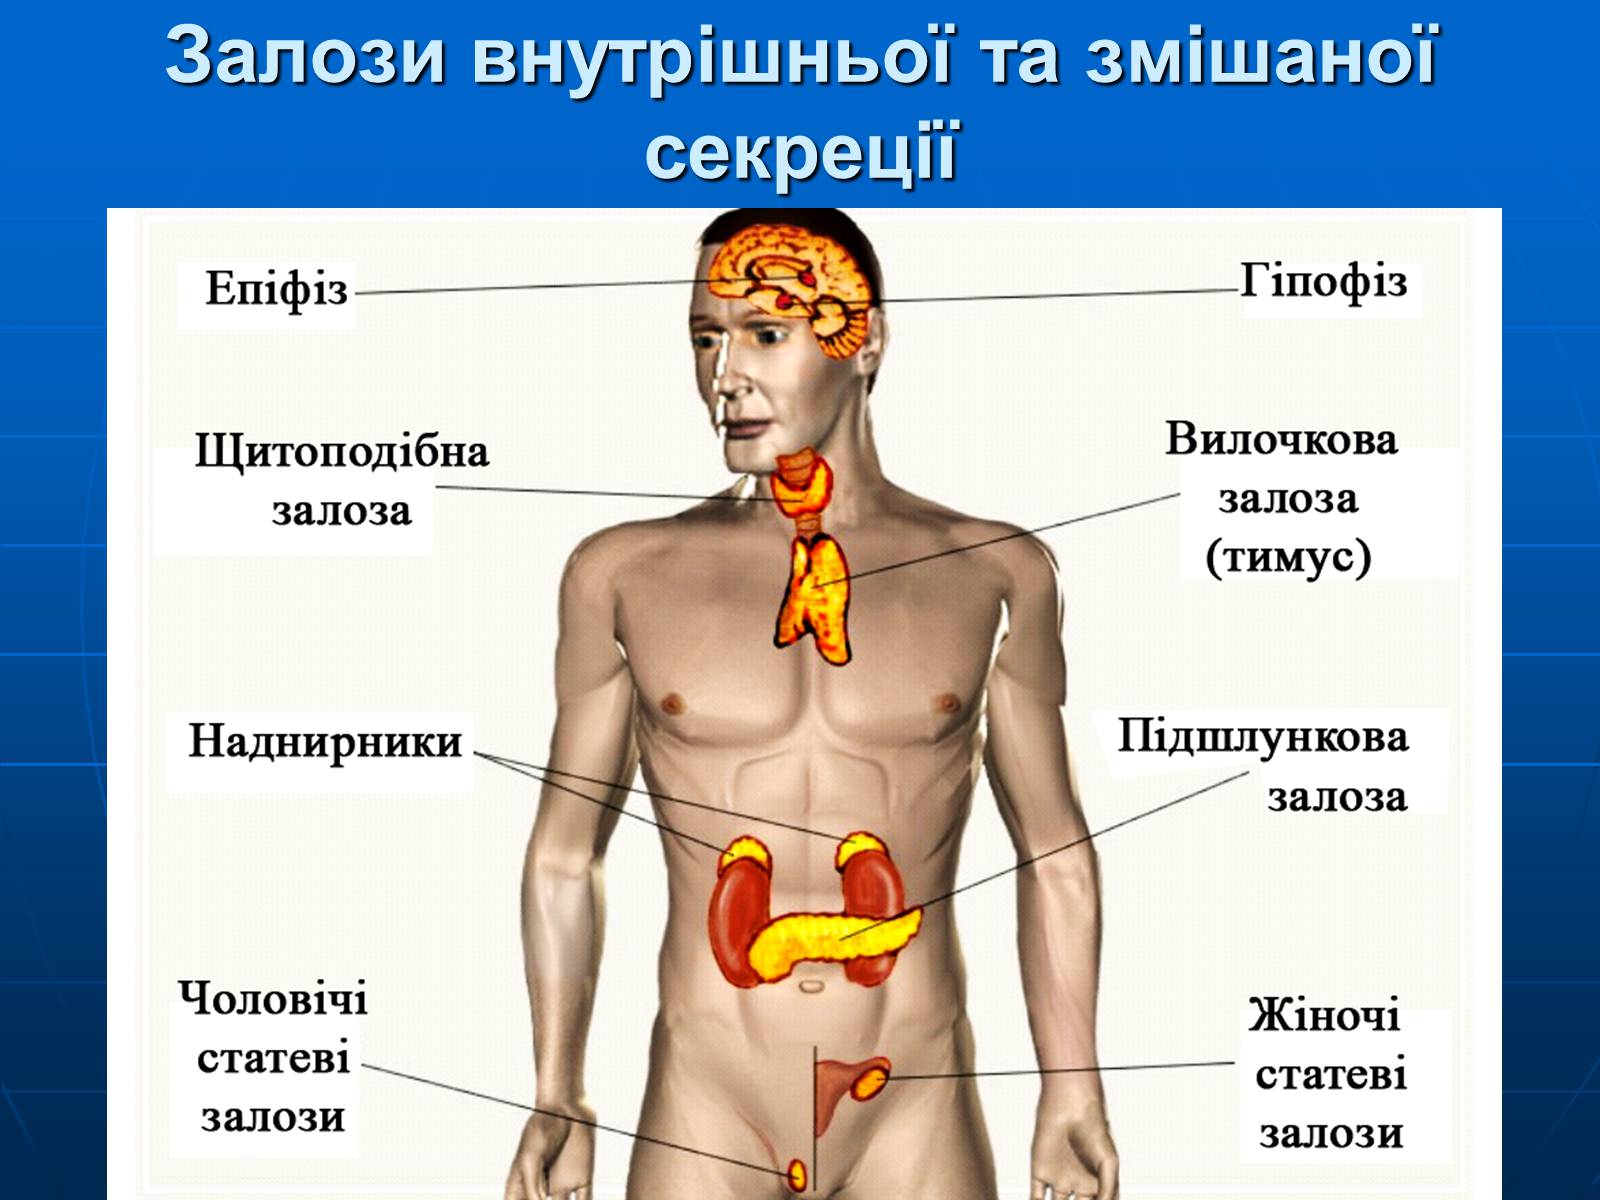 Картинок где находится. Железы внутренней секреции анатомия. Железы внутренней секреции и их расположение в организме. Эндокринная система человека строение желез внутренней секреции. Схематическое отображение функций желез внутренней секреции.